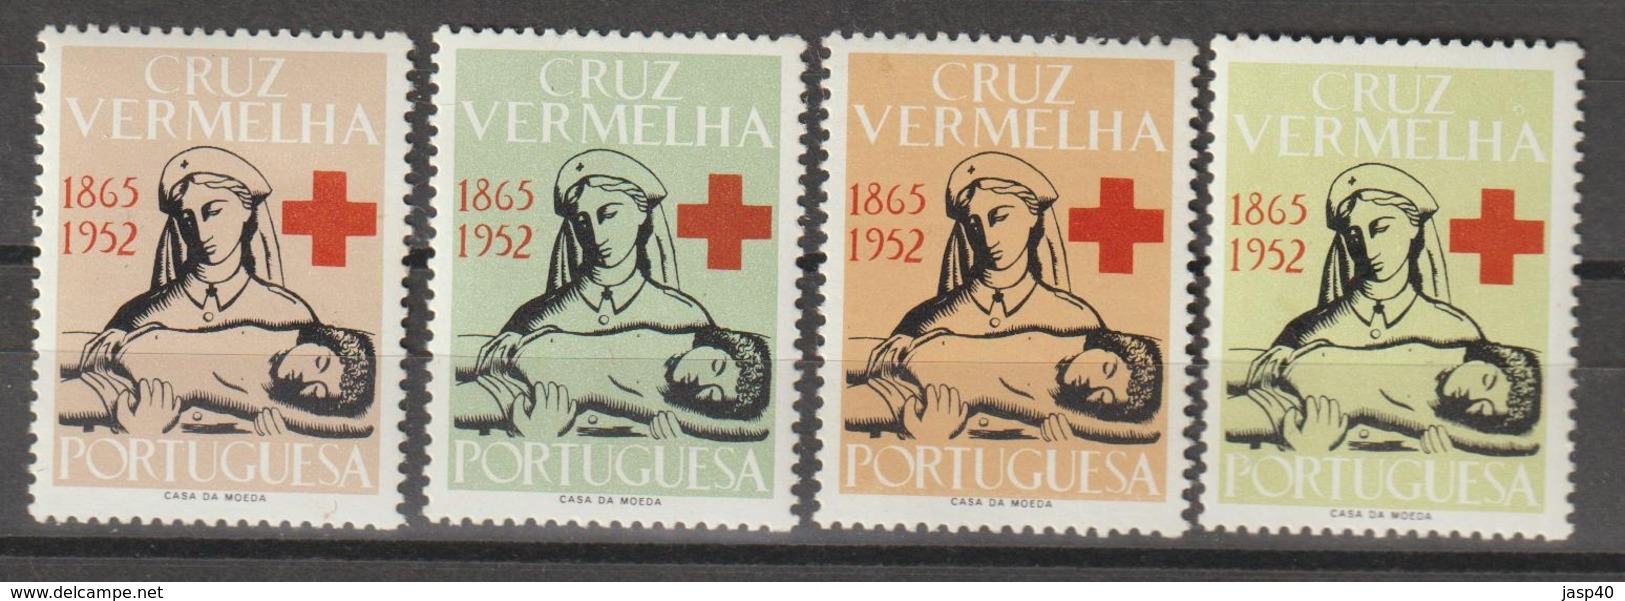 PORTUGAL - CRUZ VERMELHA EMISSÃO DE 1952 - Unused Stamps